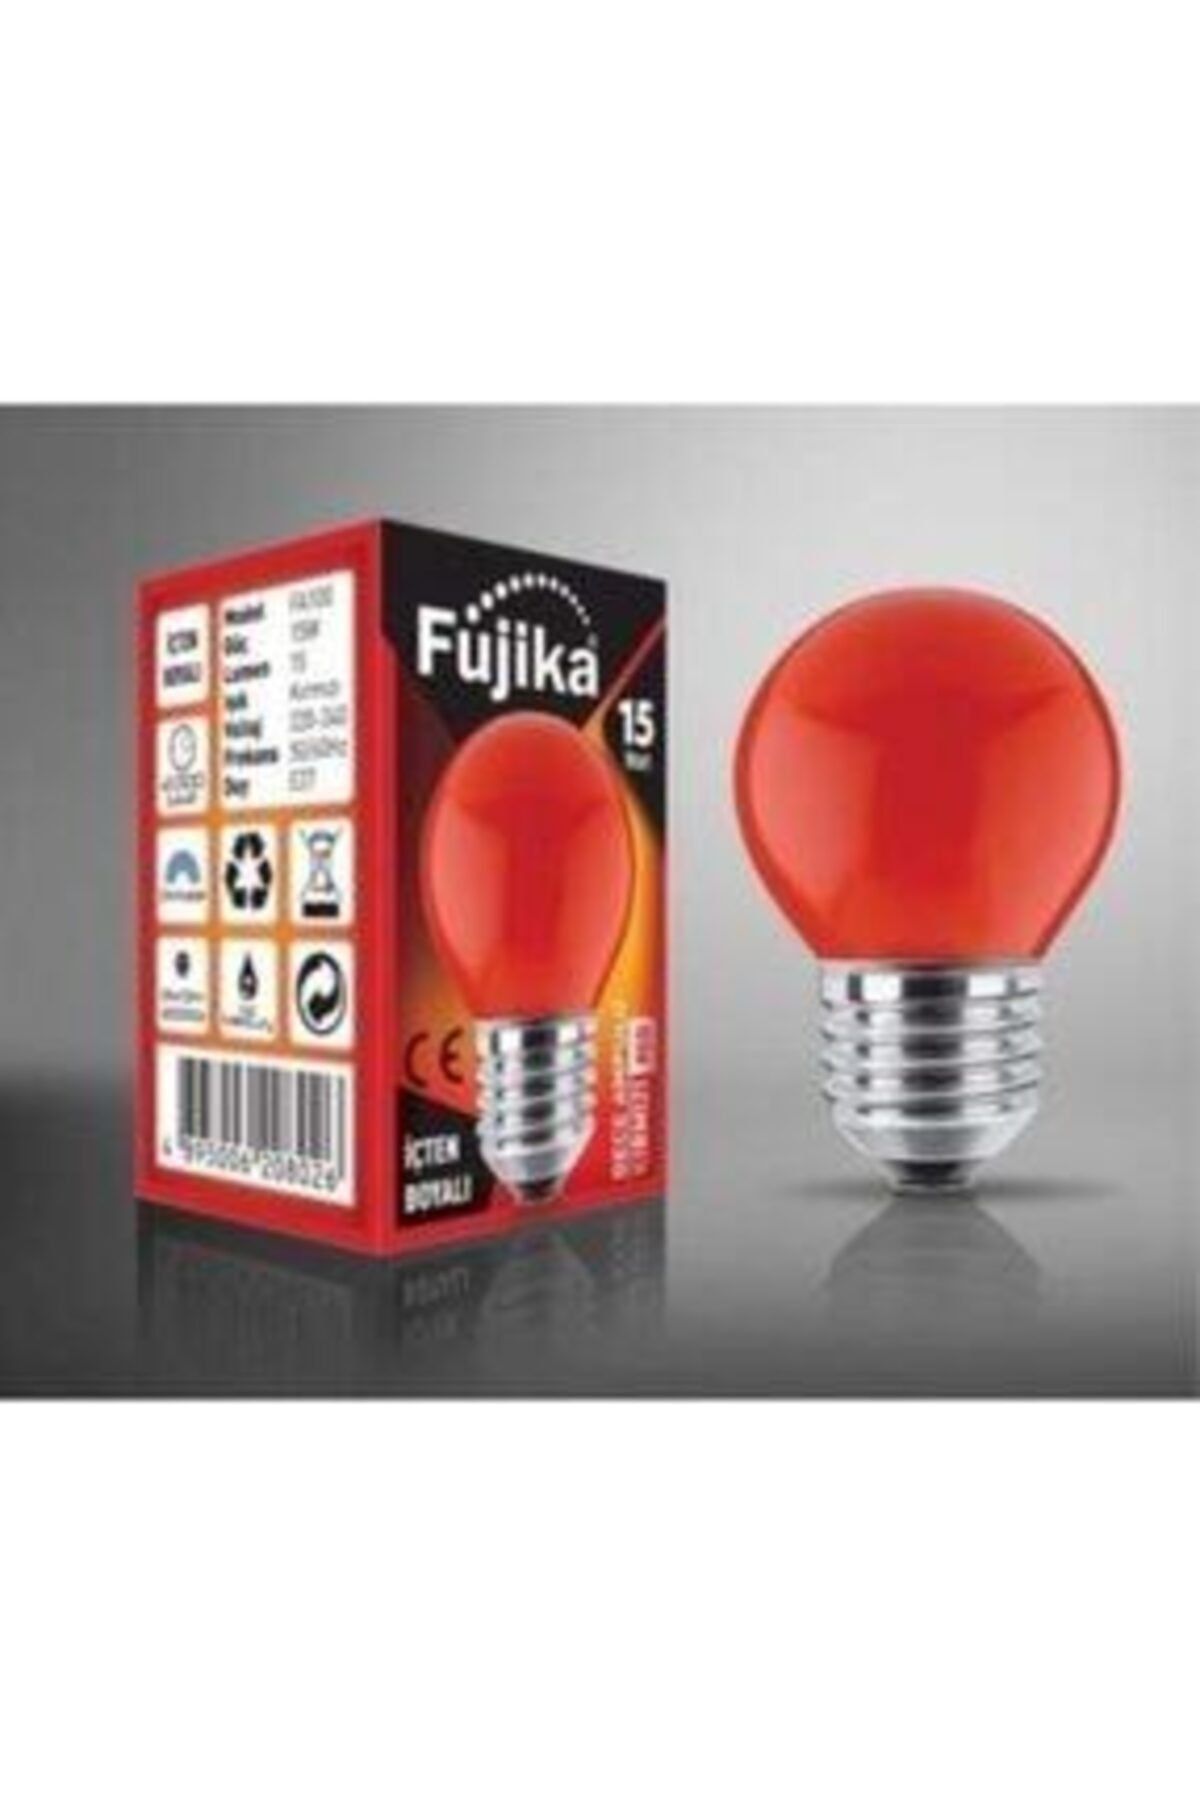 Fujika 15 Watt Renkli Gece Lambası Ampulü Kırmızı Renk -k